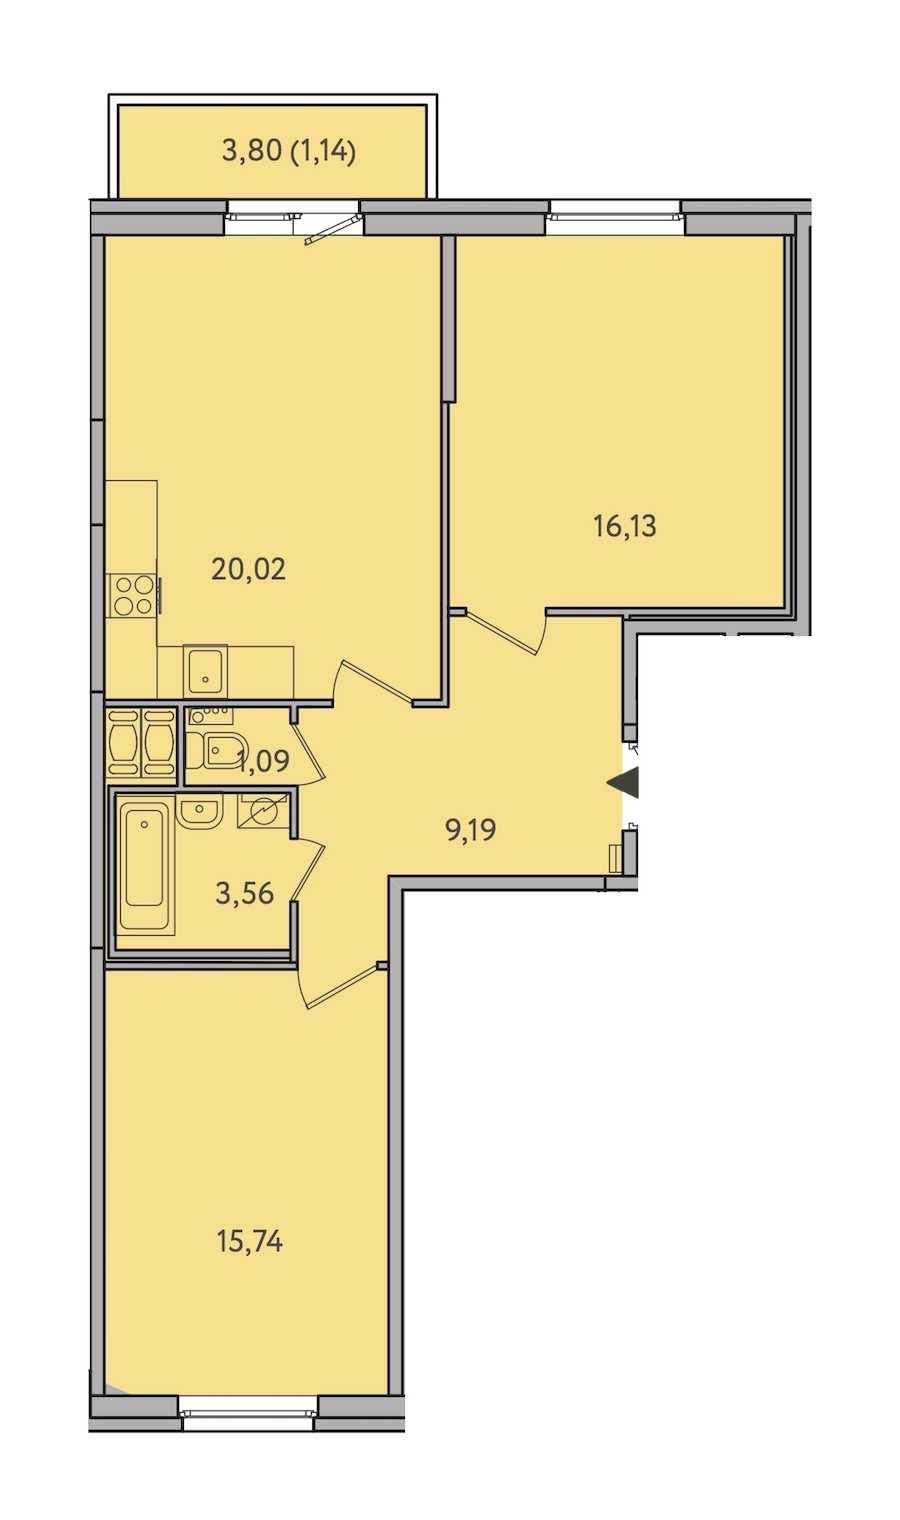 Двухкомнатная квартира в : площадь 66.87 м2 , этаж: 10 – купить в Санкт-Петербурге